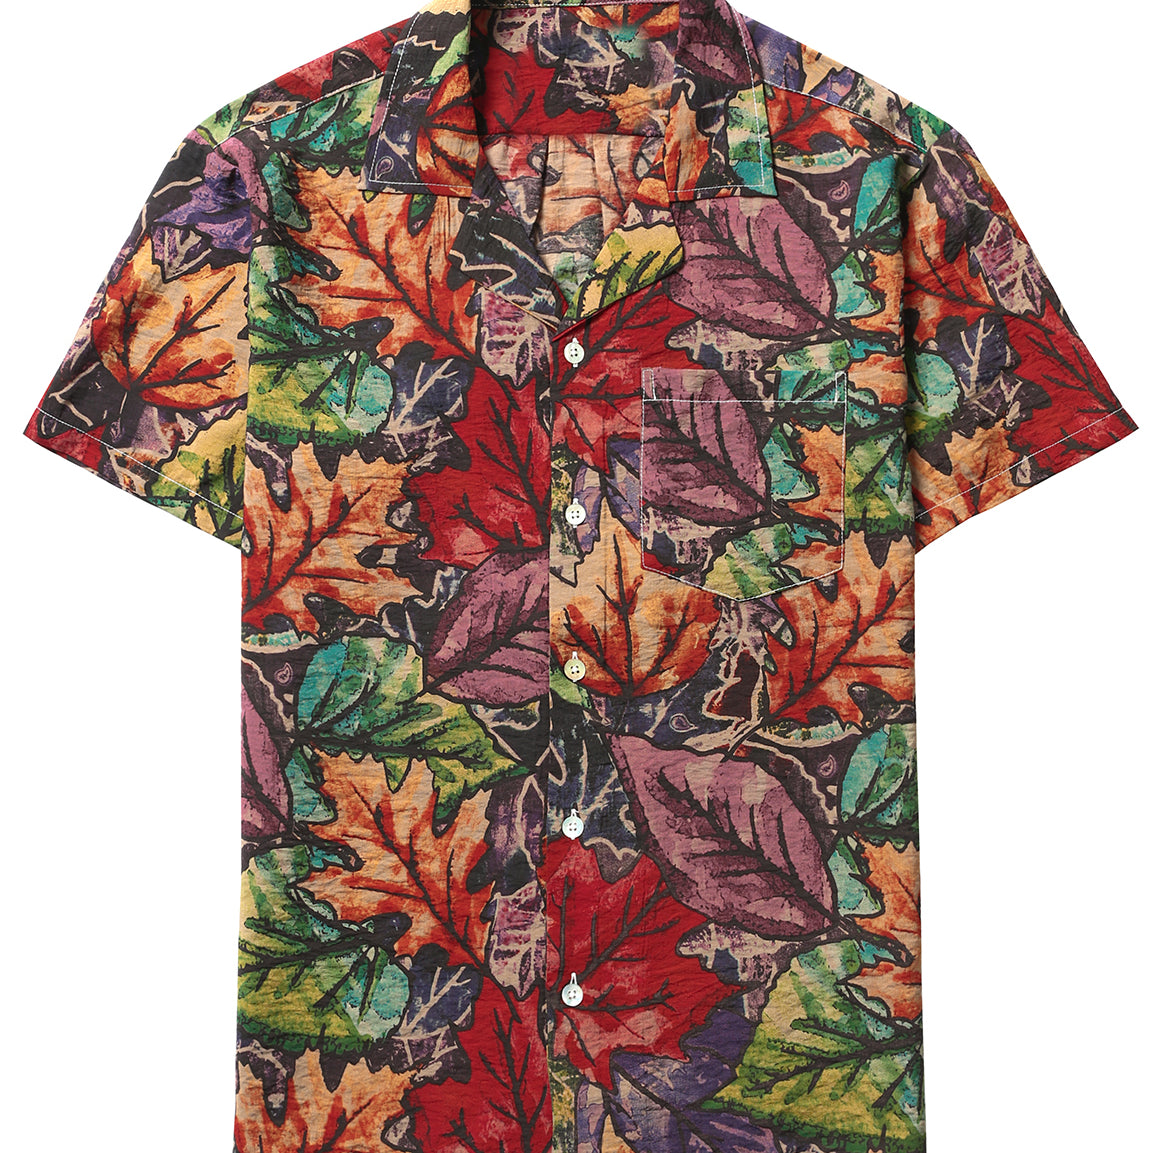 Men's Retro Button Down Summer 70s Short Sleeve Shirt